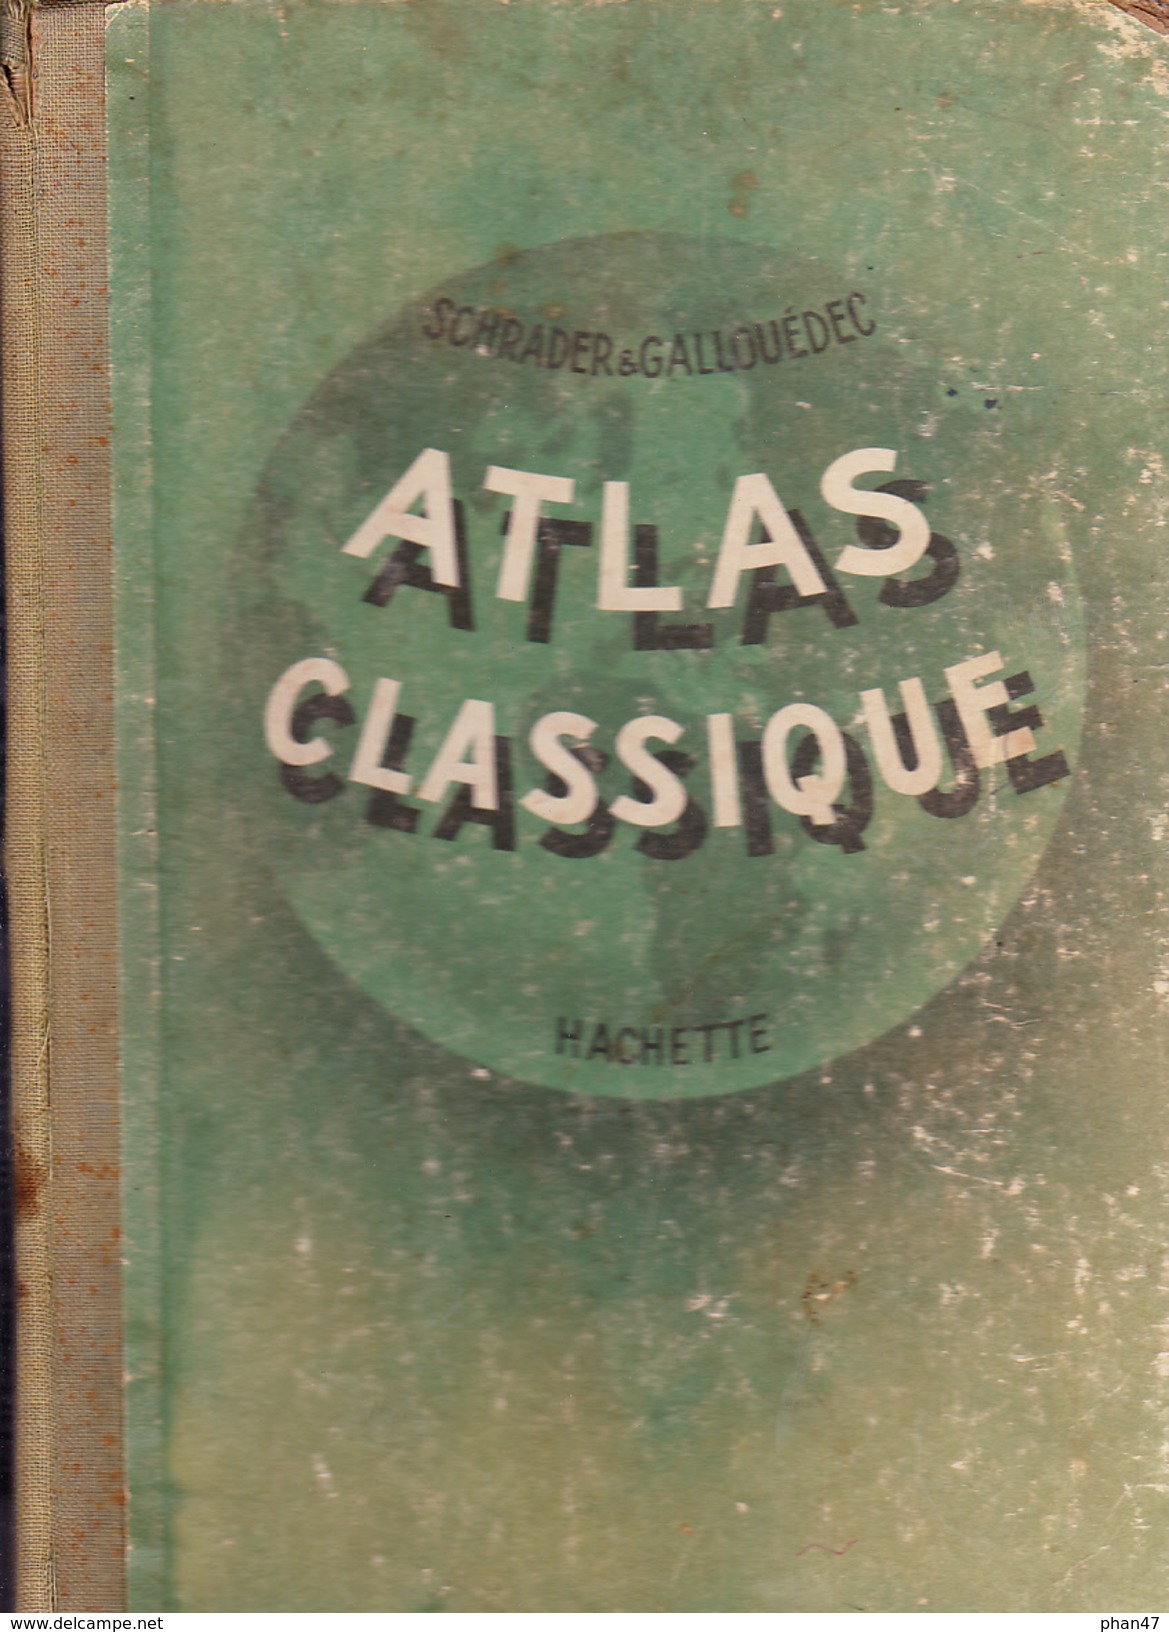 ATLAS CLASSIQUE DE GEOGRAPHIE ANCIENNE ET MODERNE, F. Schrader Et L. Gallouédec, Ed. Hachette 1953 - Maps/Atlas